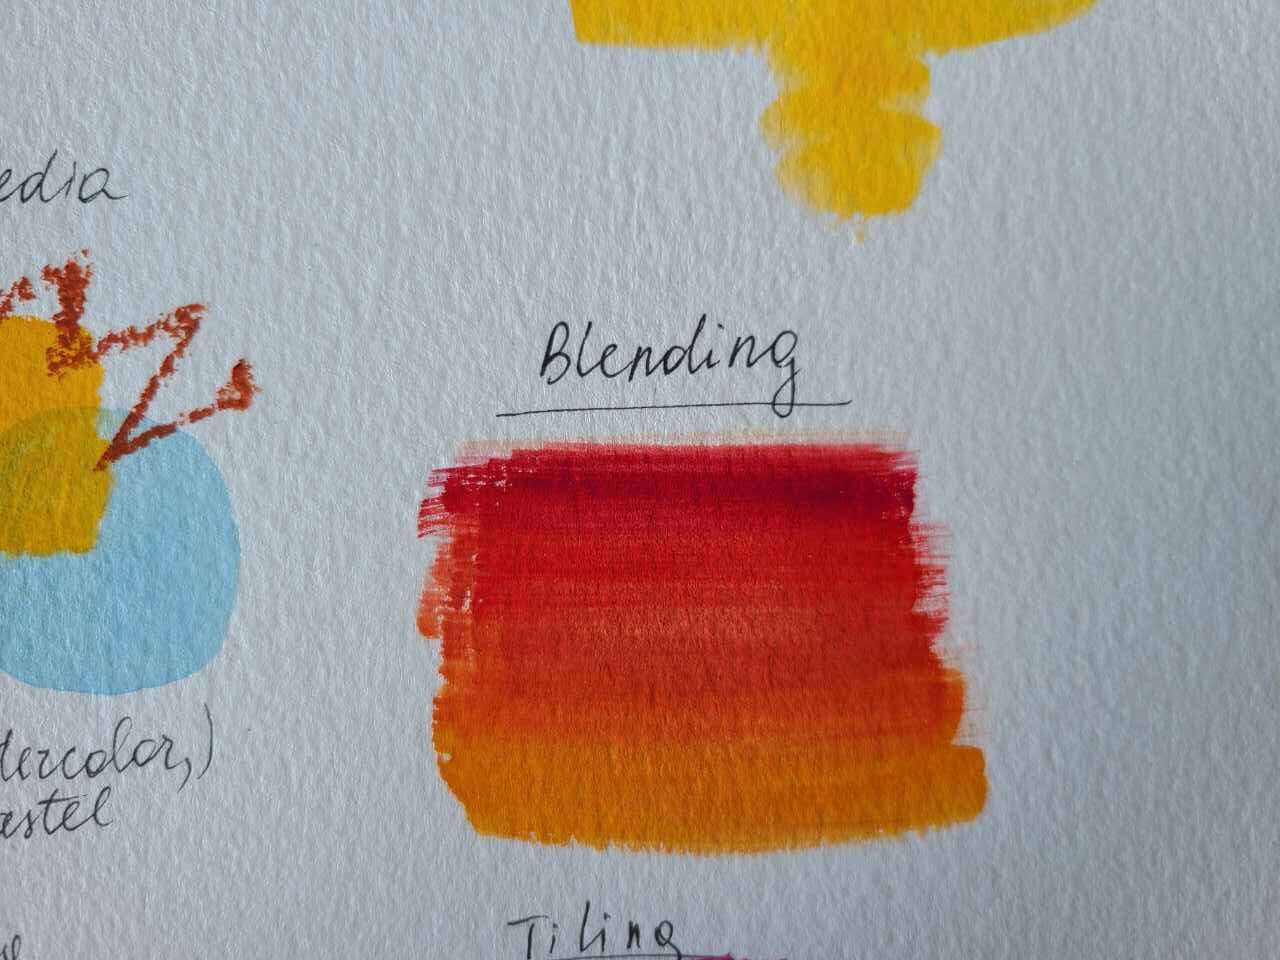 blending gouache painting technique